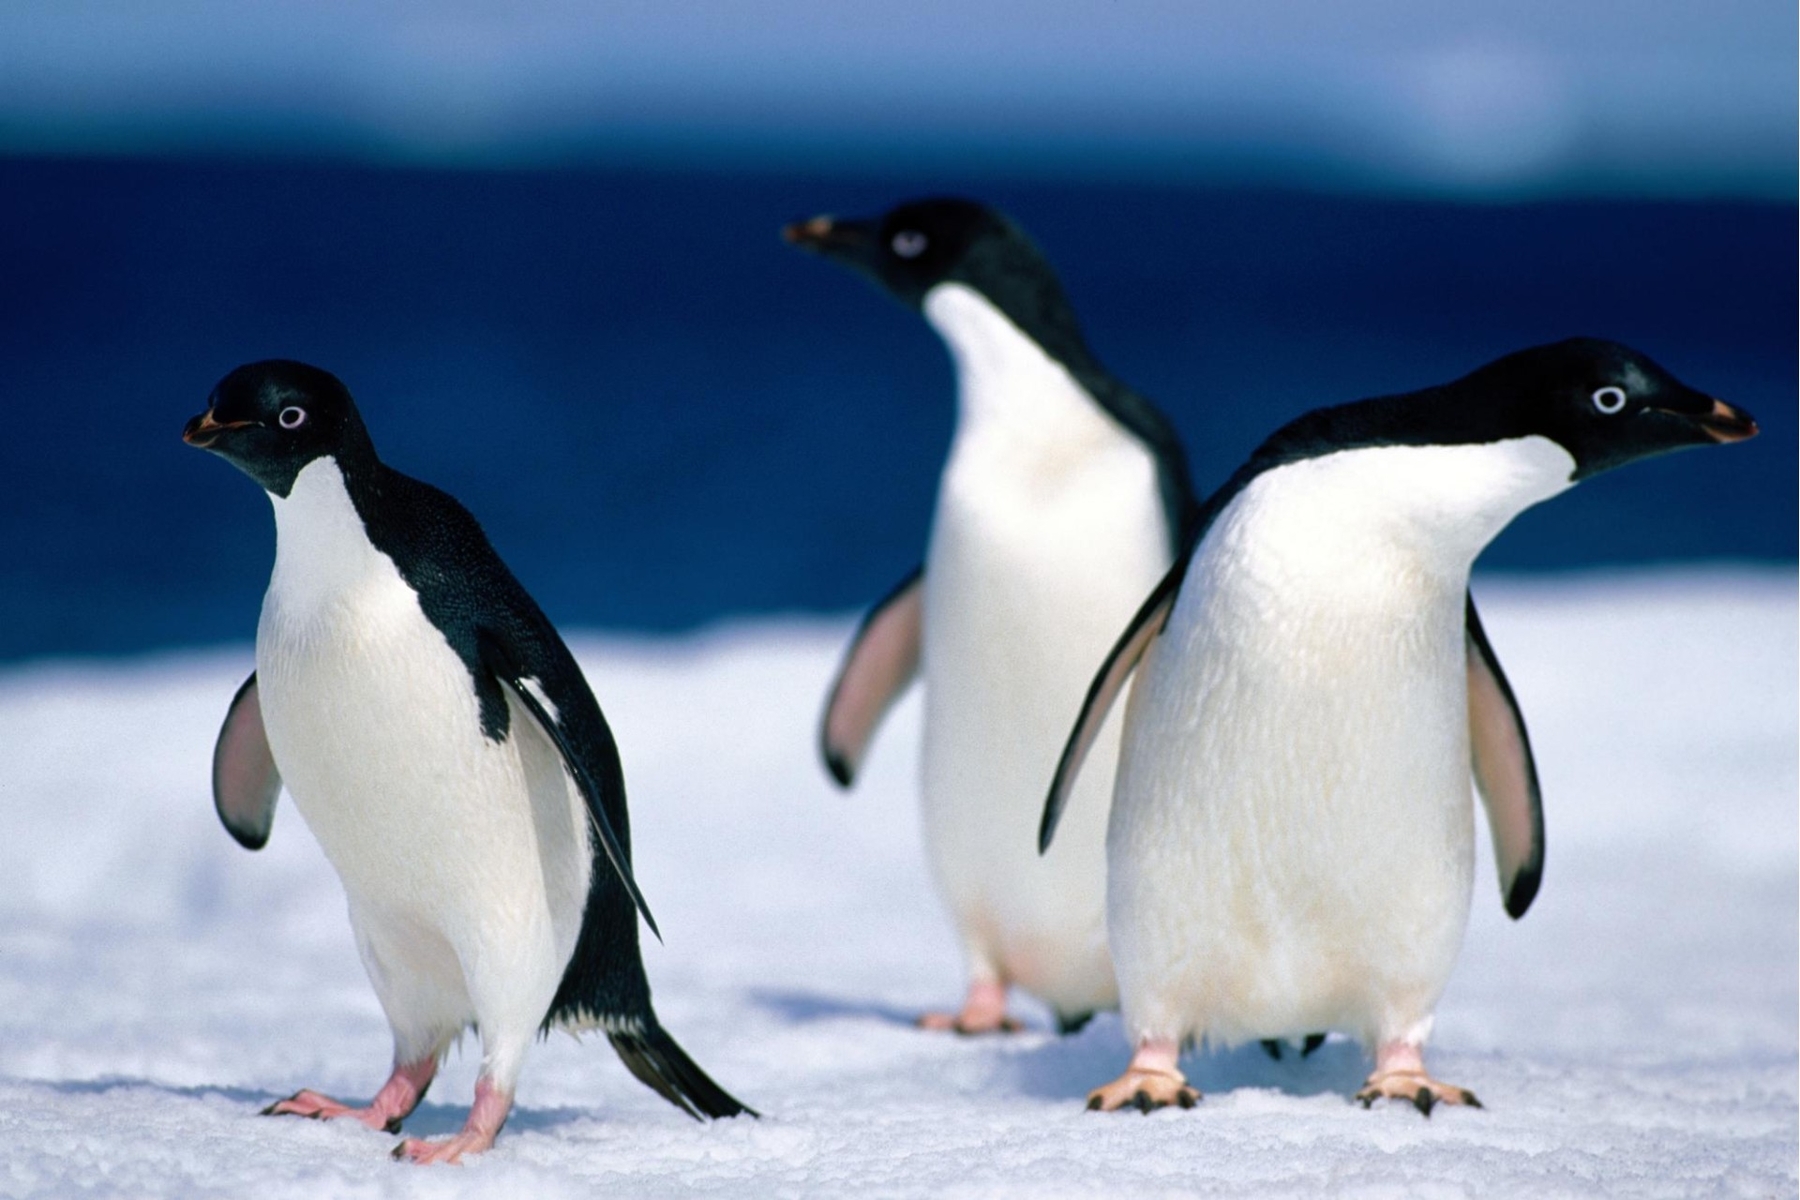 birds, animals, pinguins, blue Image for desktop